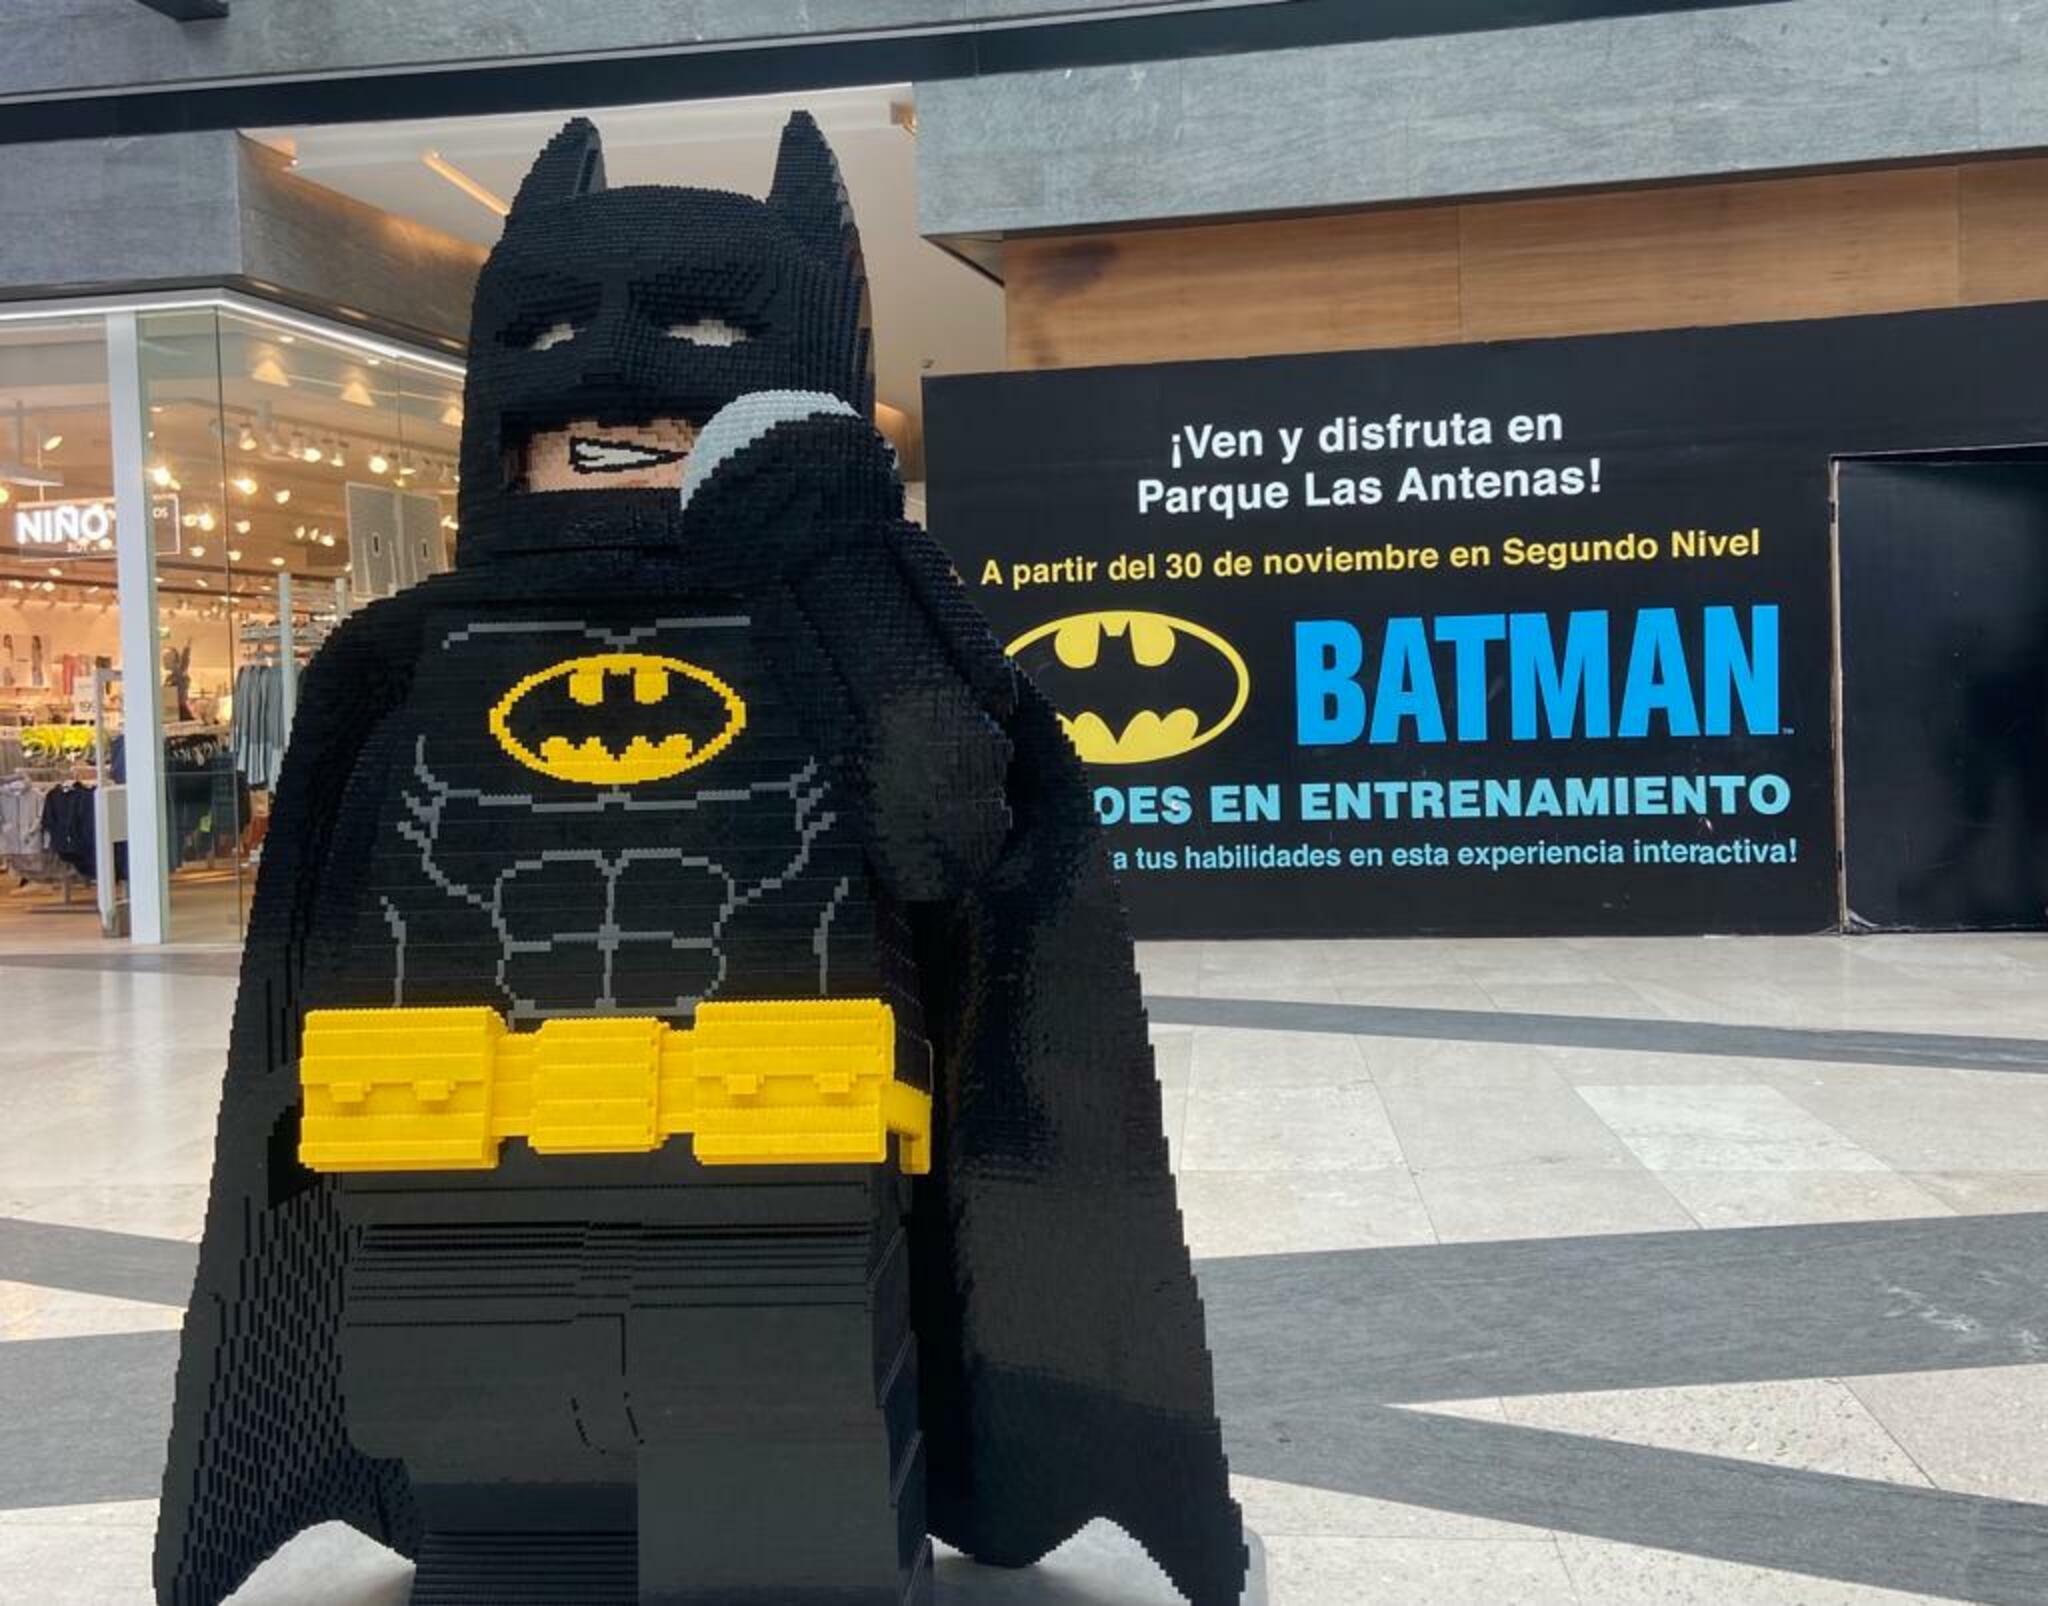 Batman: héroes en entretenimiento en Parque Las Antenas, ¡gratis!